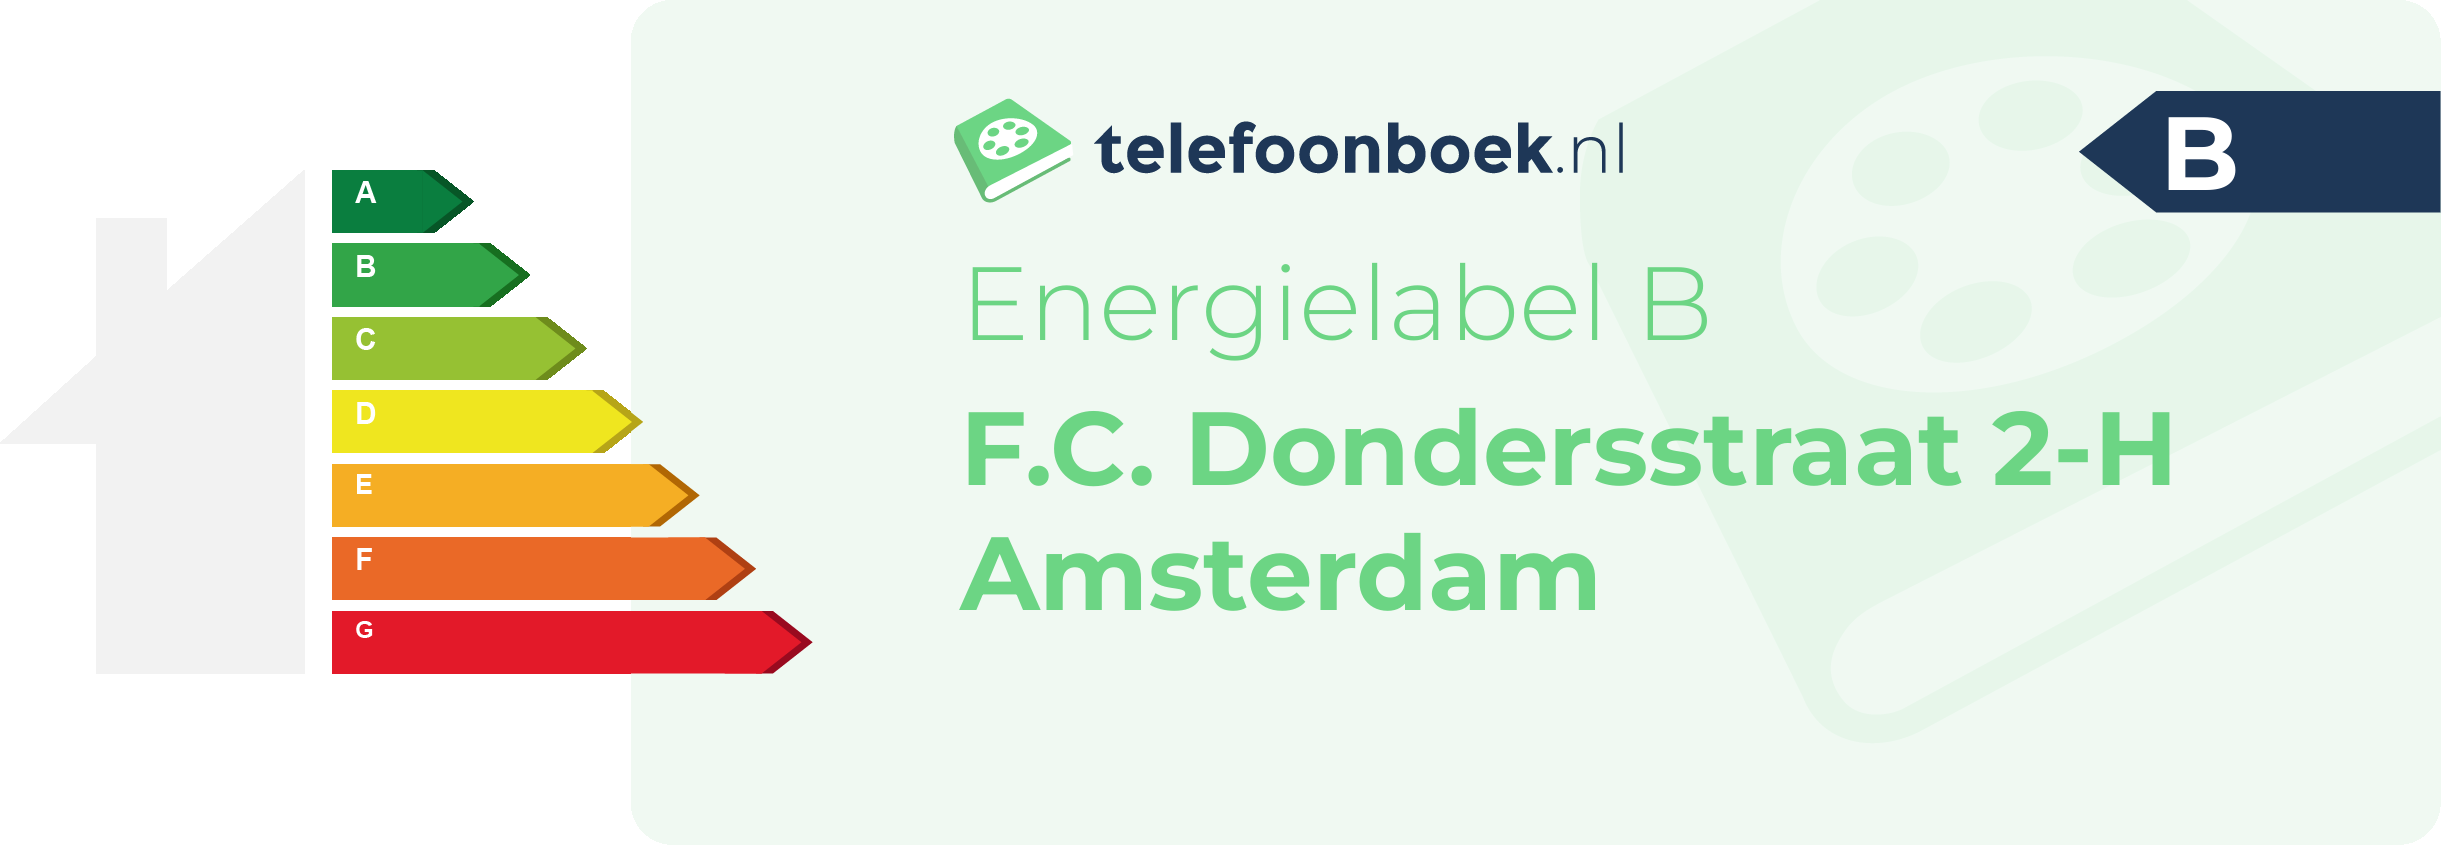 Energielabel F.C. Dondersstraat 2-H Amsterdam